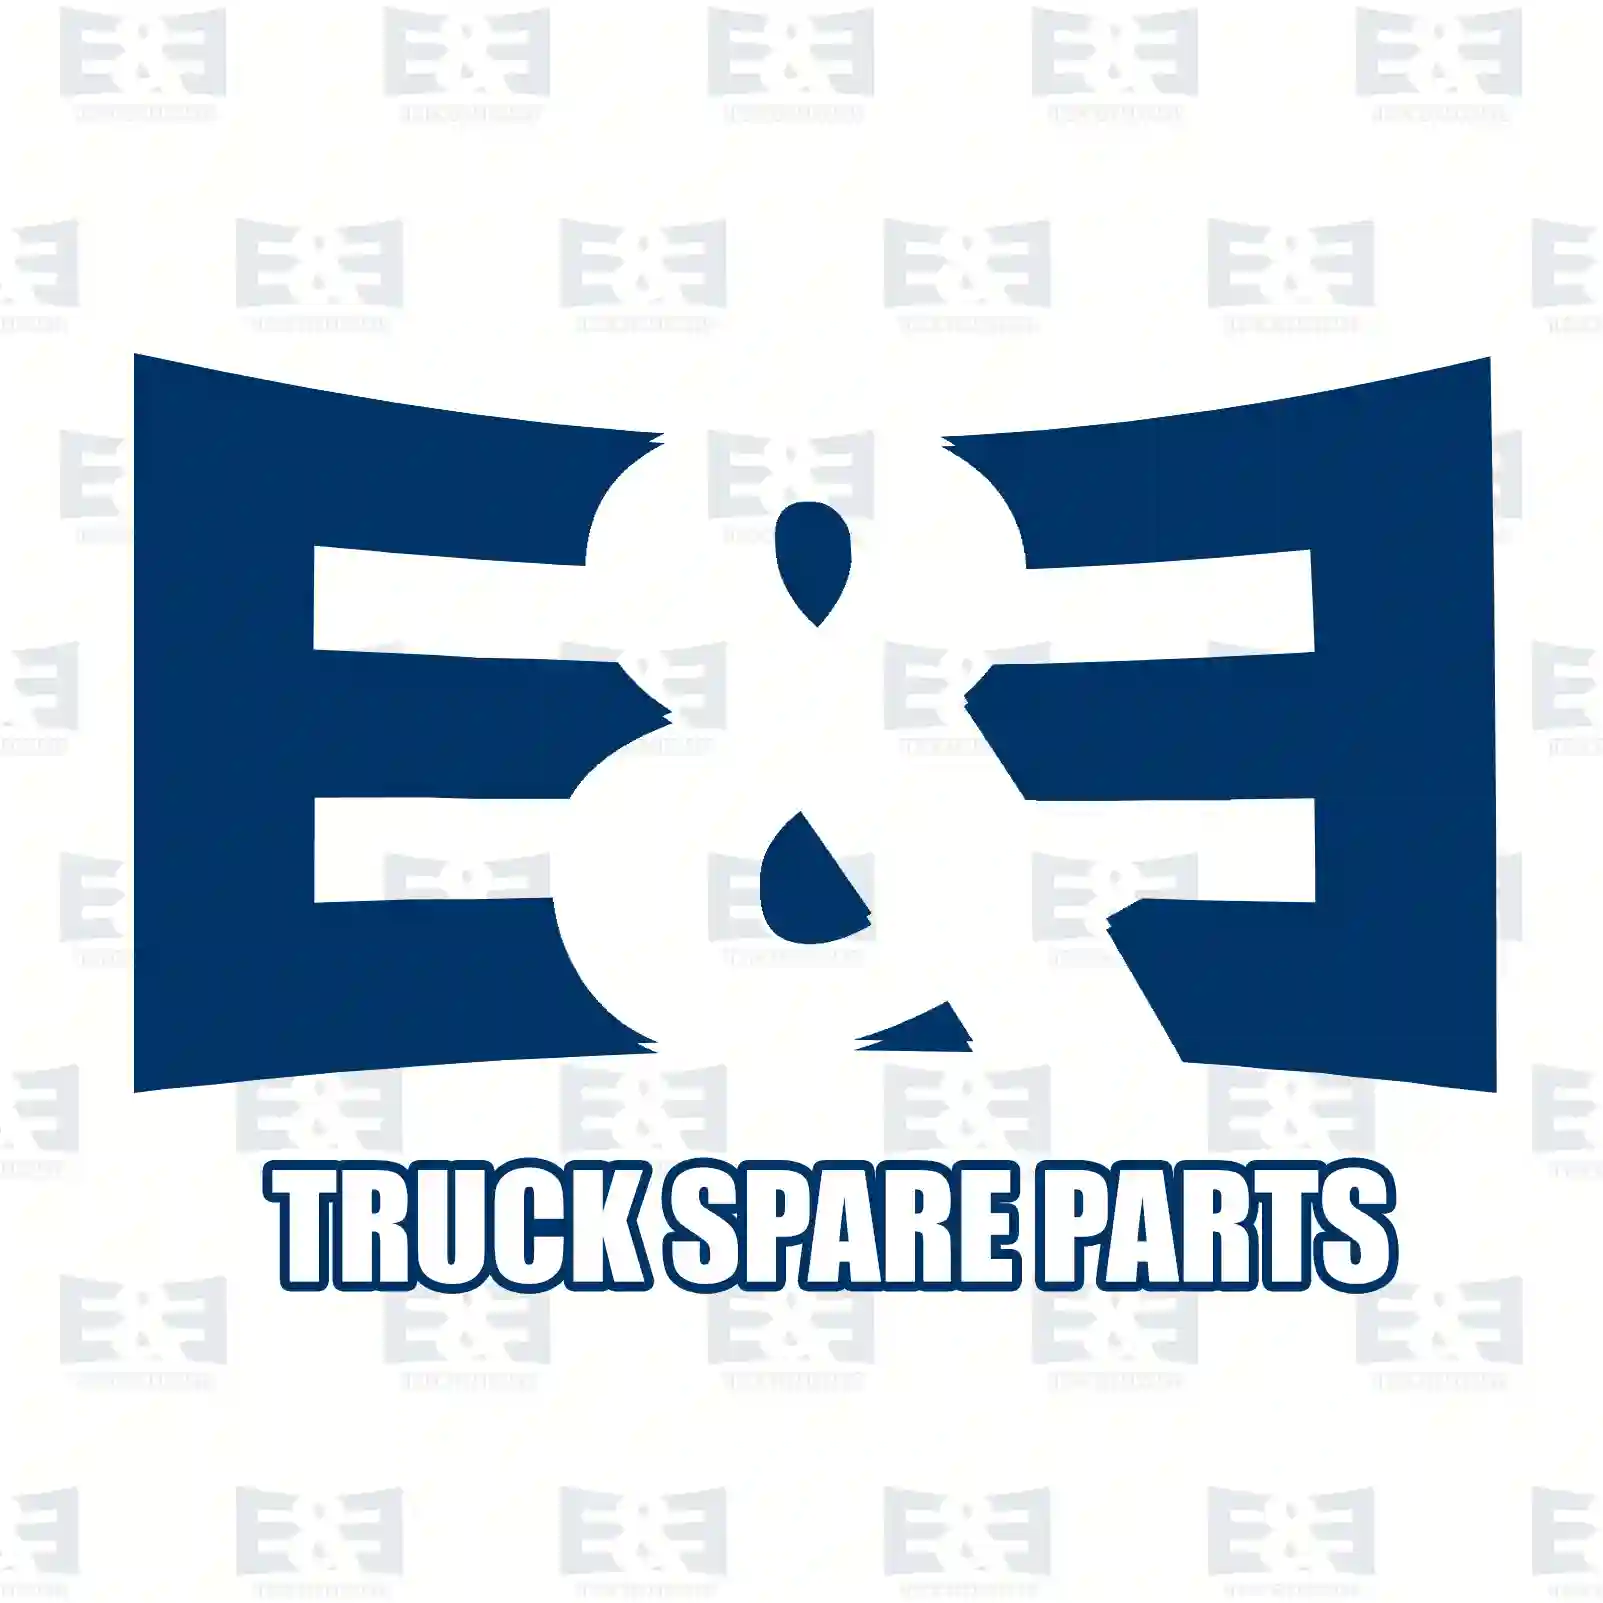 Load sensitive valve, 2E2295543, 1387214, 1387214R, 1935115 ||  2E2295543 E&E Truck Spare Parts | Truck Spare Parts, Auotomotive Spare Parts Load sensitive valve, 2E2295543, 1387214, 1387214R, 1935115 ||  2E2295543 E&E Truck Spare Parts | Truck Spare Parts, Auotomotive Spare Parts